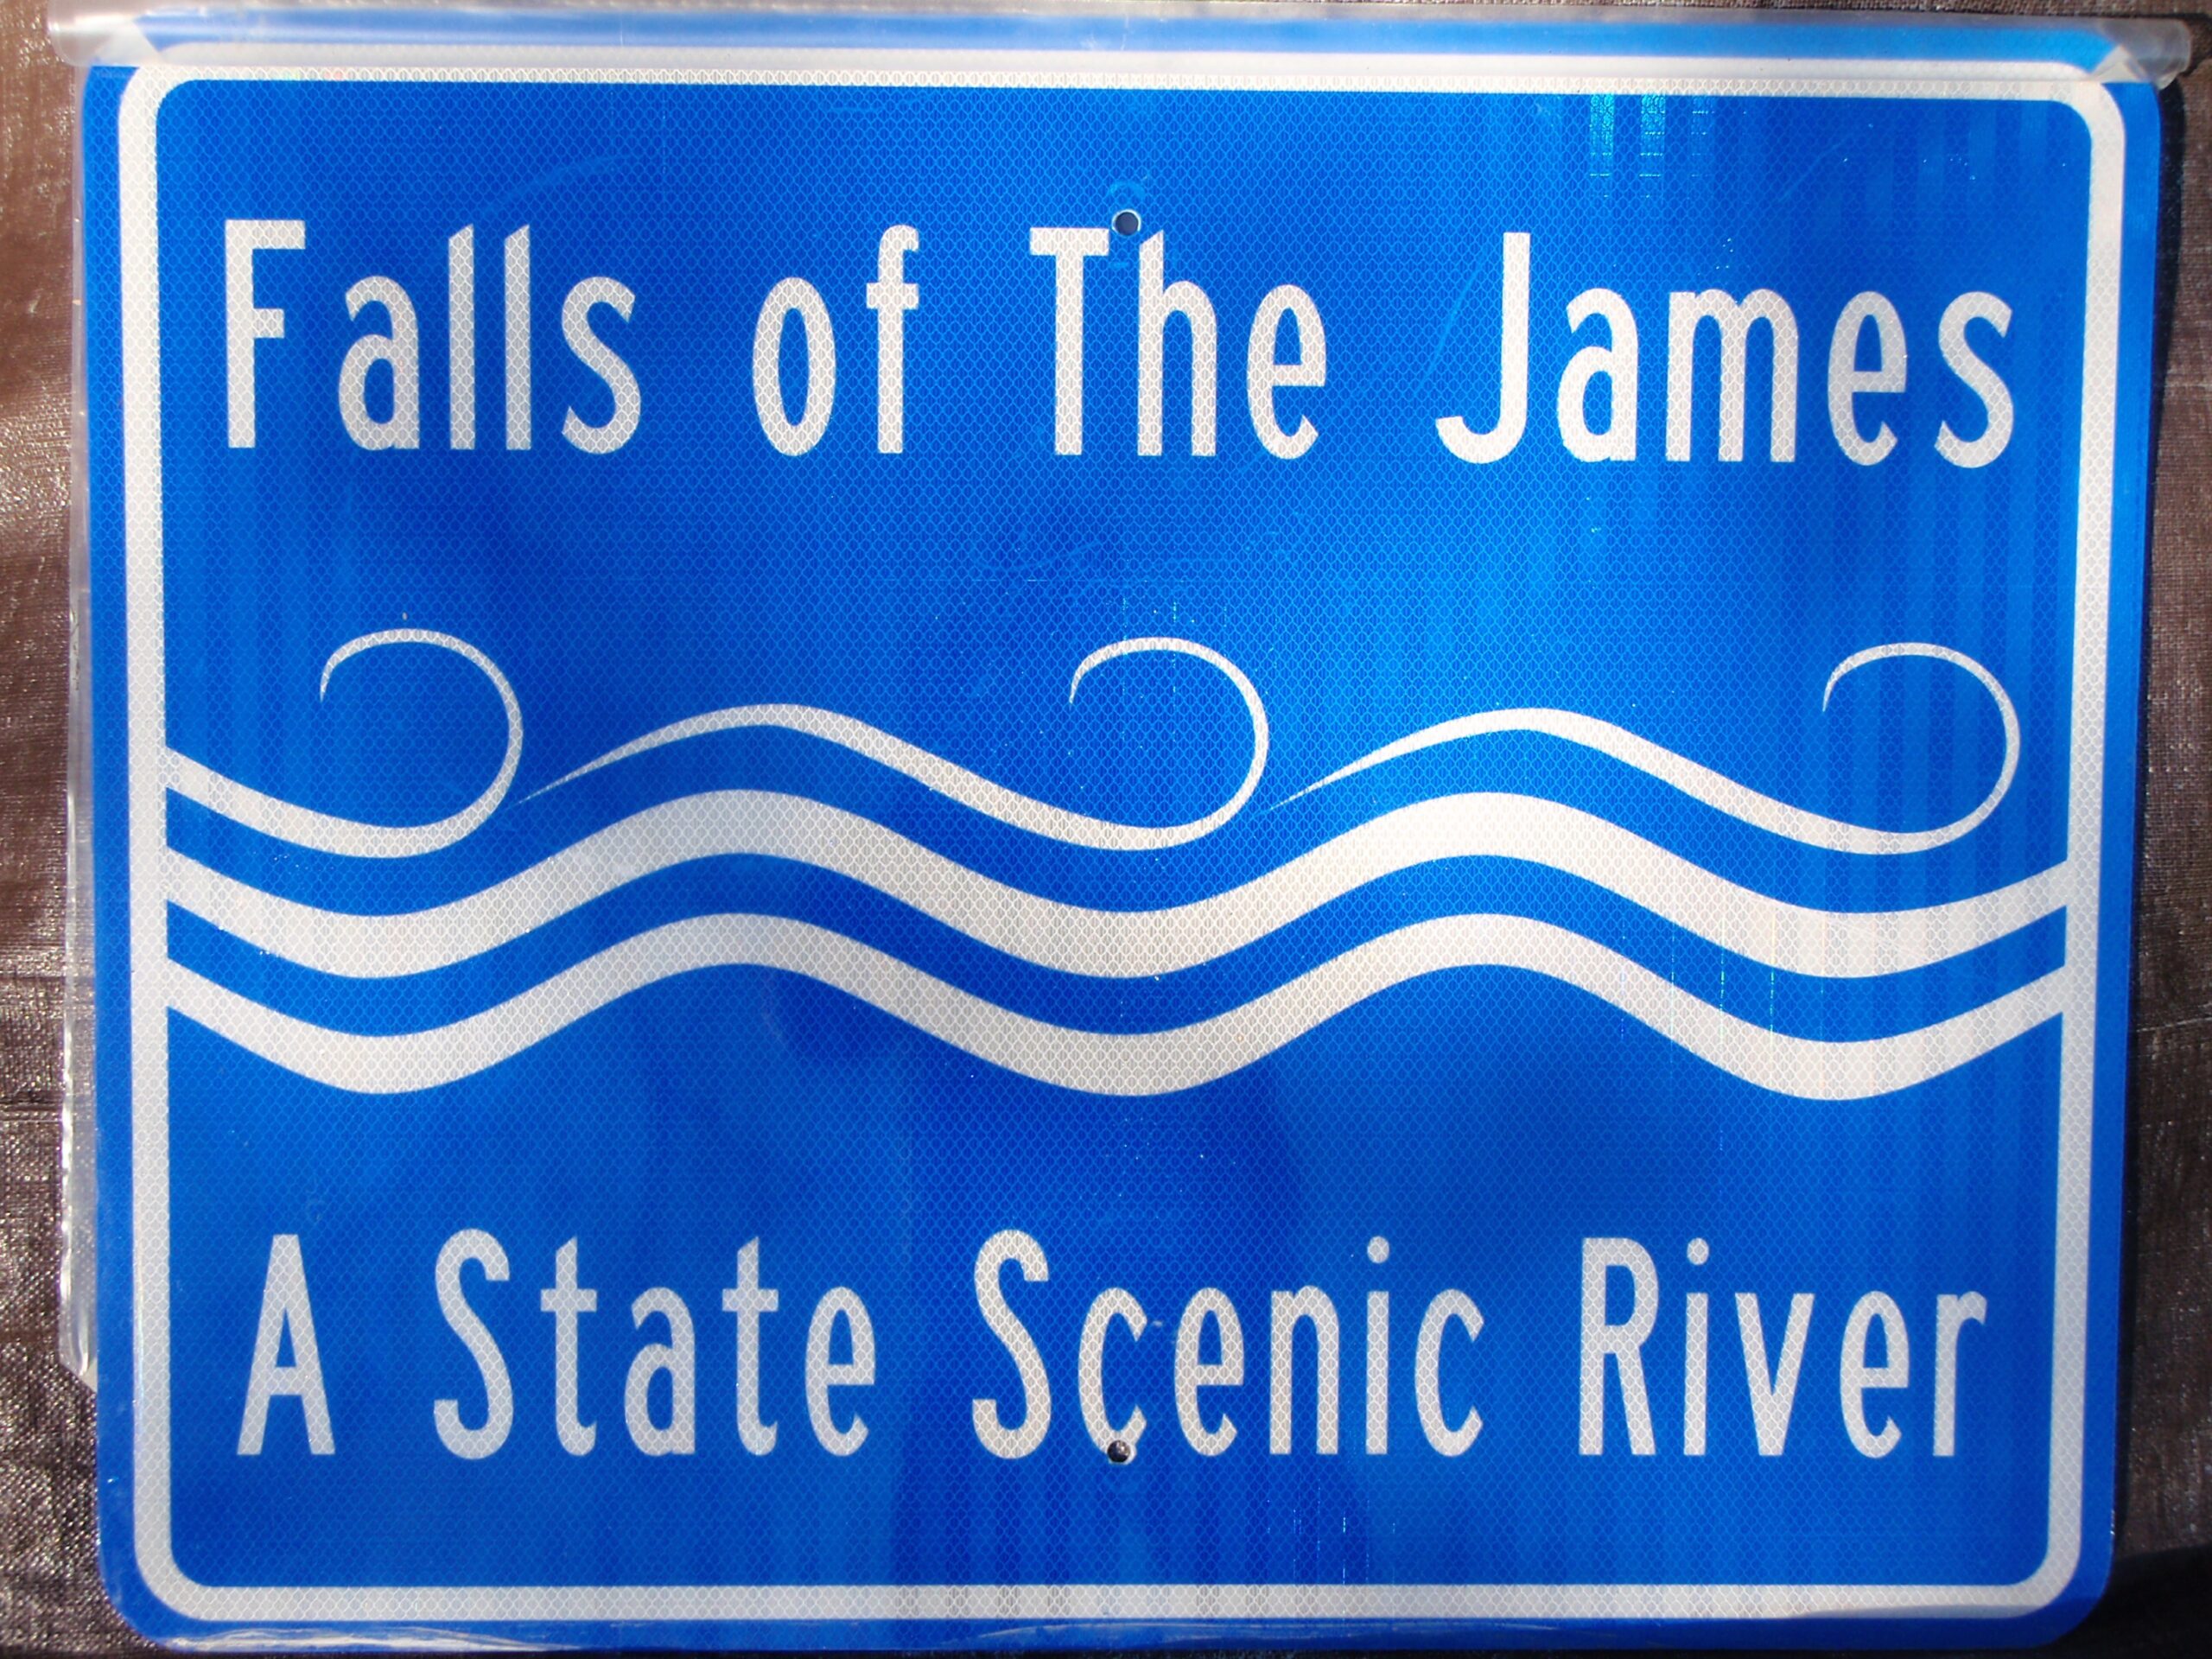 Historic Falls of the James Scenic River Designation